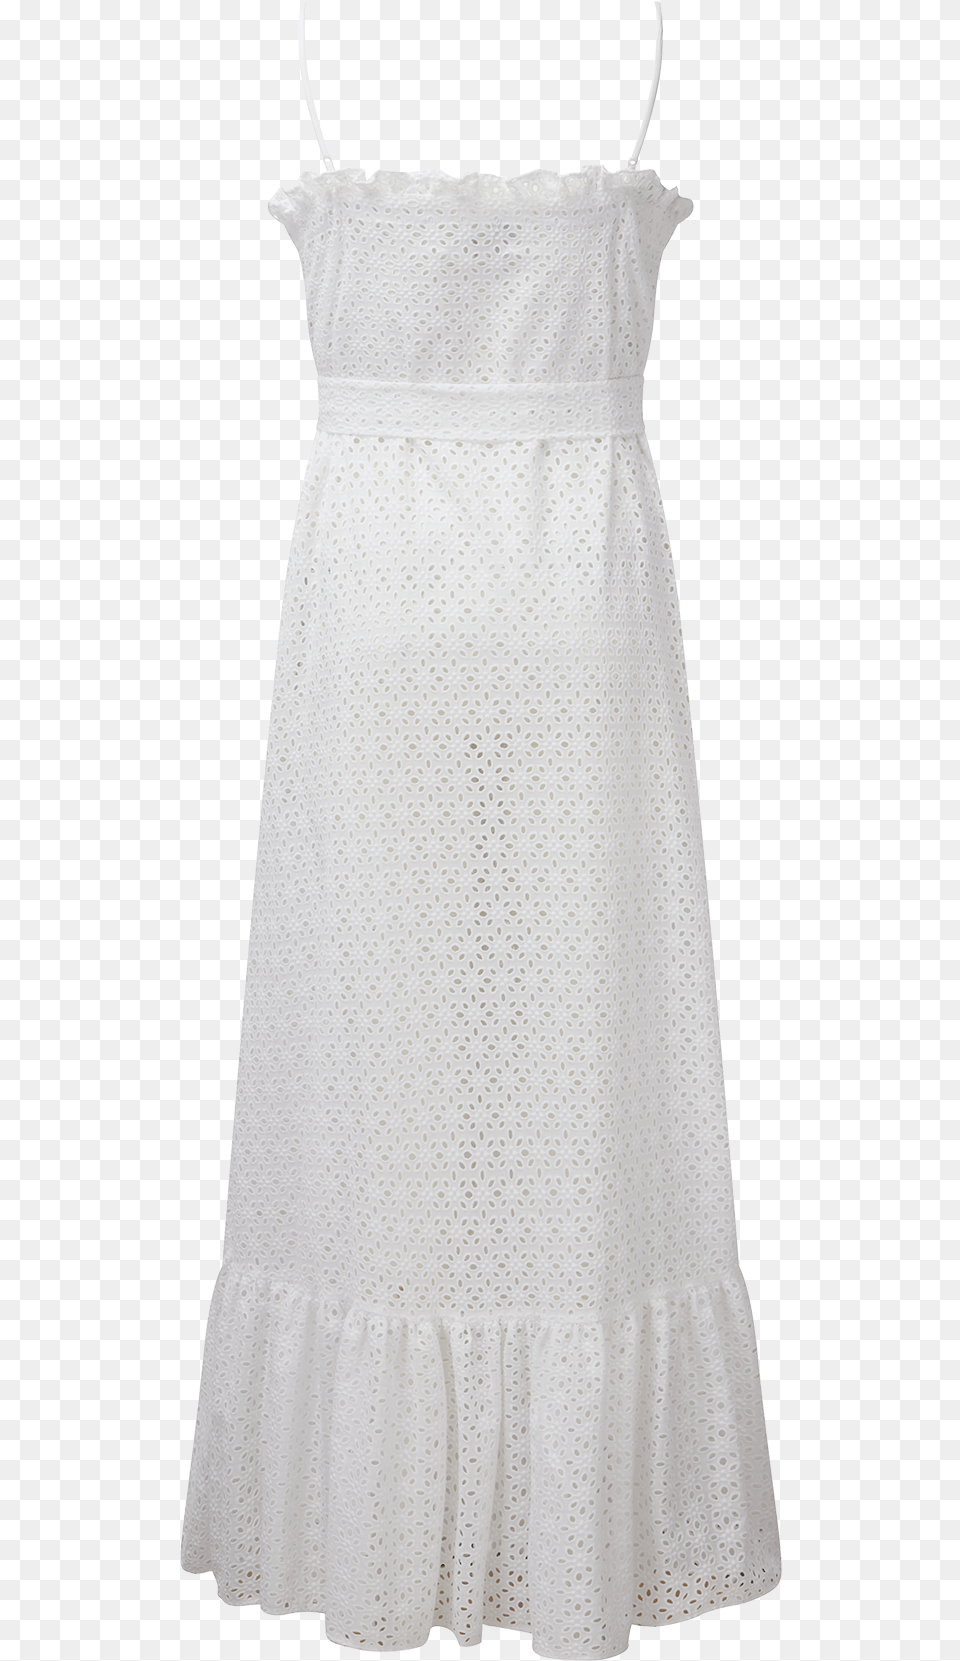 White Eyelet Ruffle Slip Dress Lauren Ralph Lauren White, Clothing, Blouse, Child, Female Free Png Download